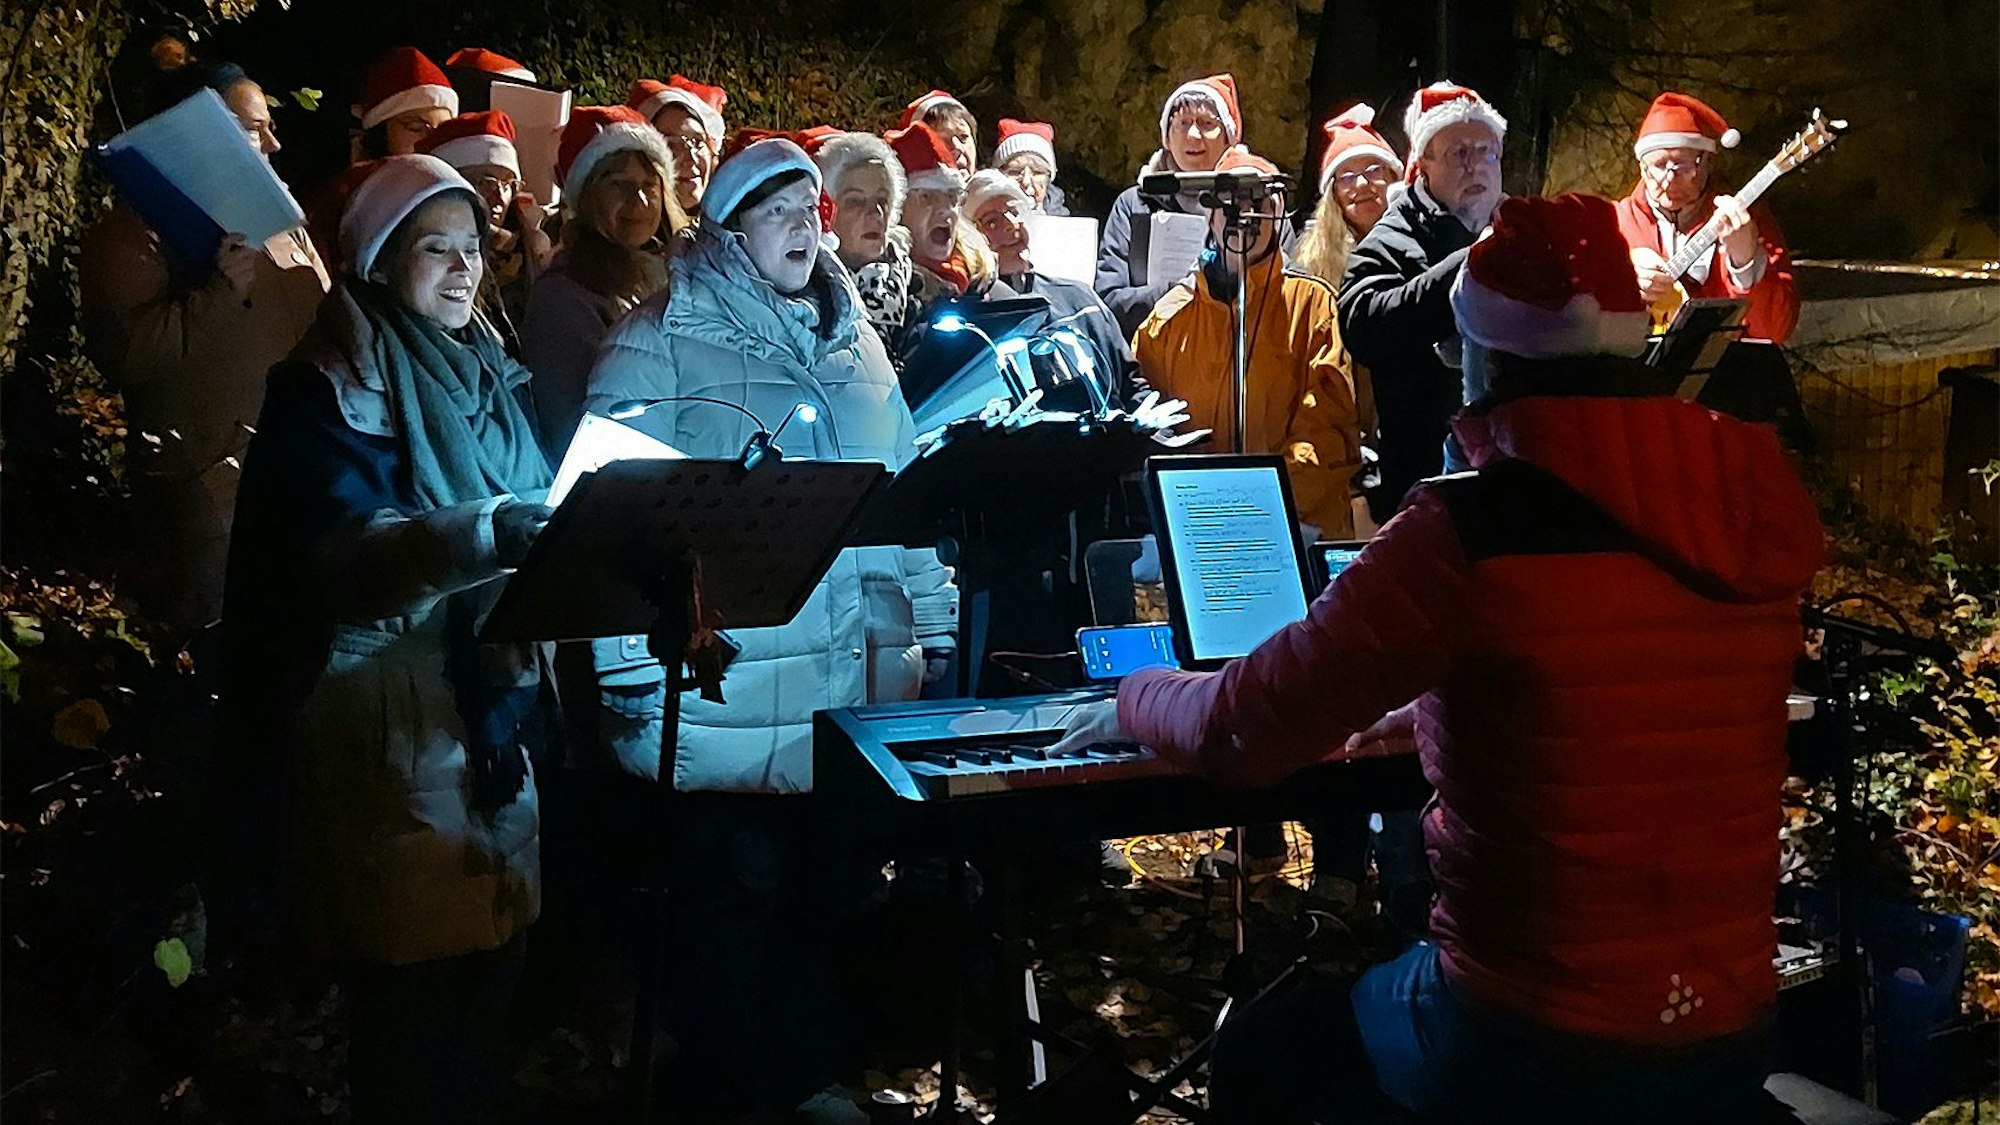 Die Mitglieder des Chors Kakus Vocale haben rote Weihnachtsmützen angezogen und singen Weihnachtslieder, begleitet von Uli Schneider am Keyboard.